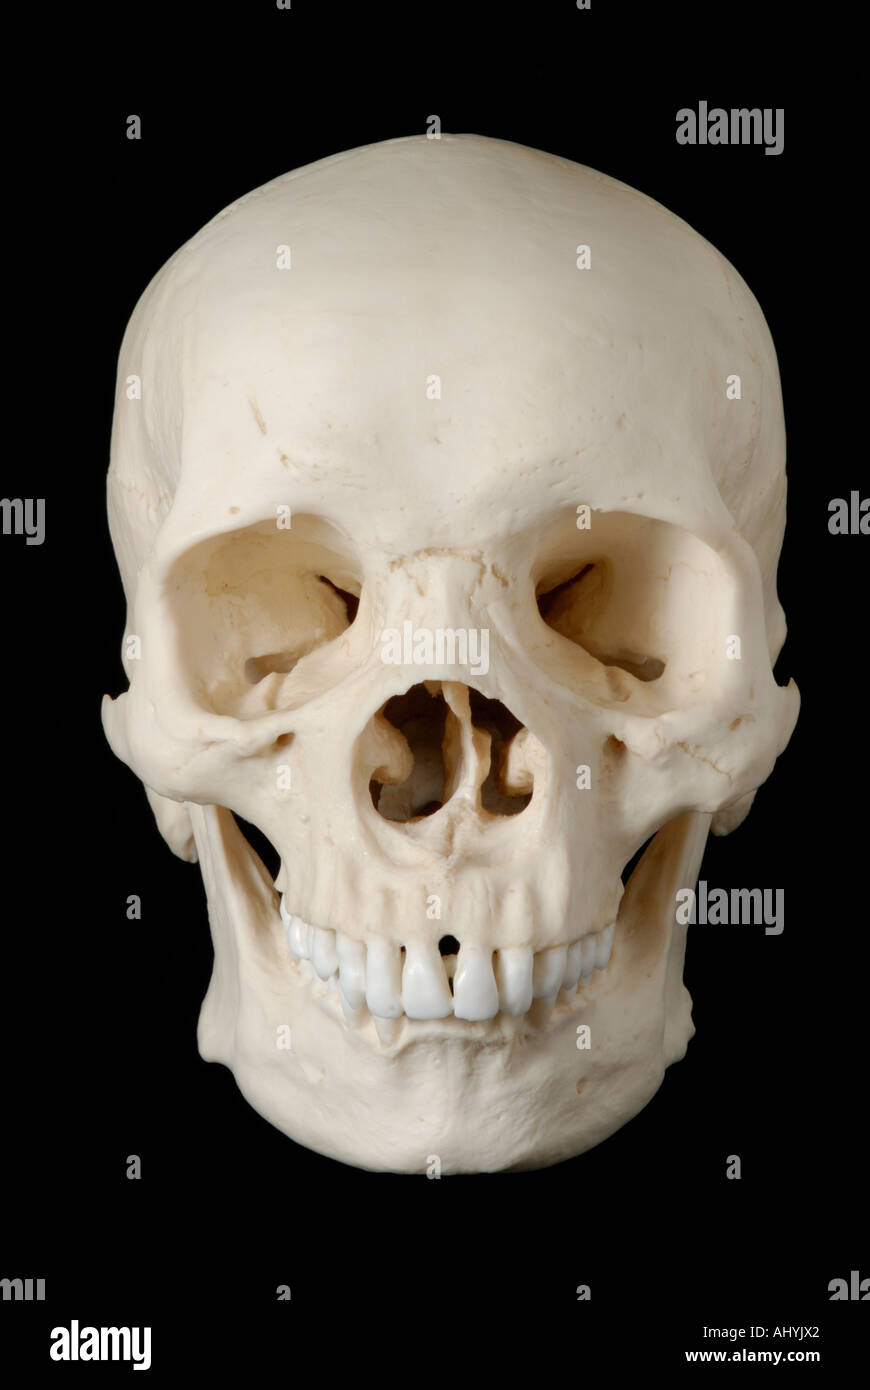 Human skull model against black background Stock Photo